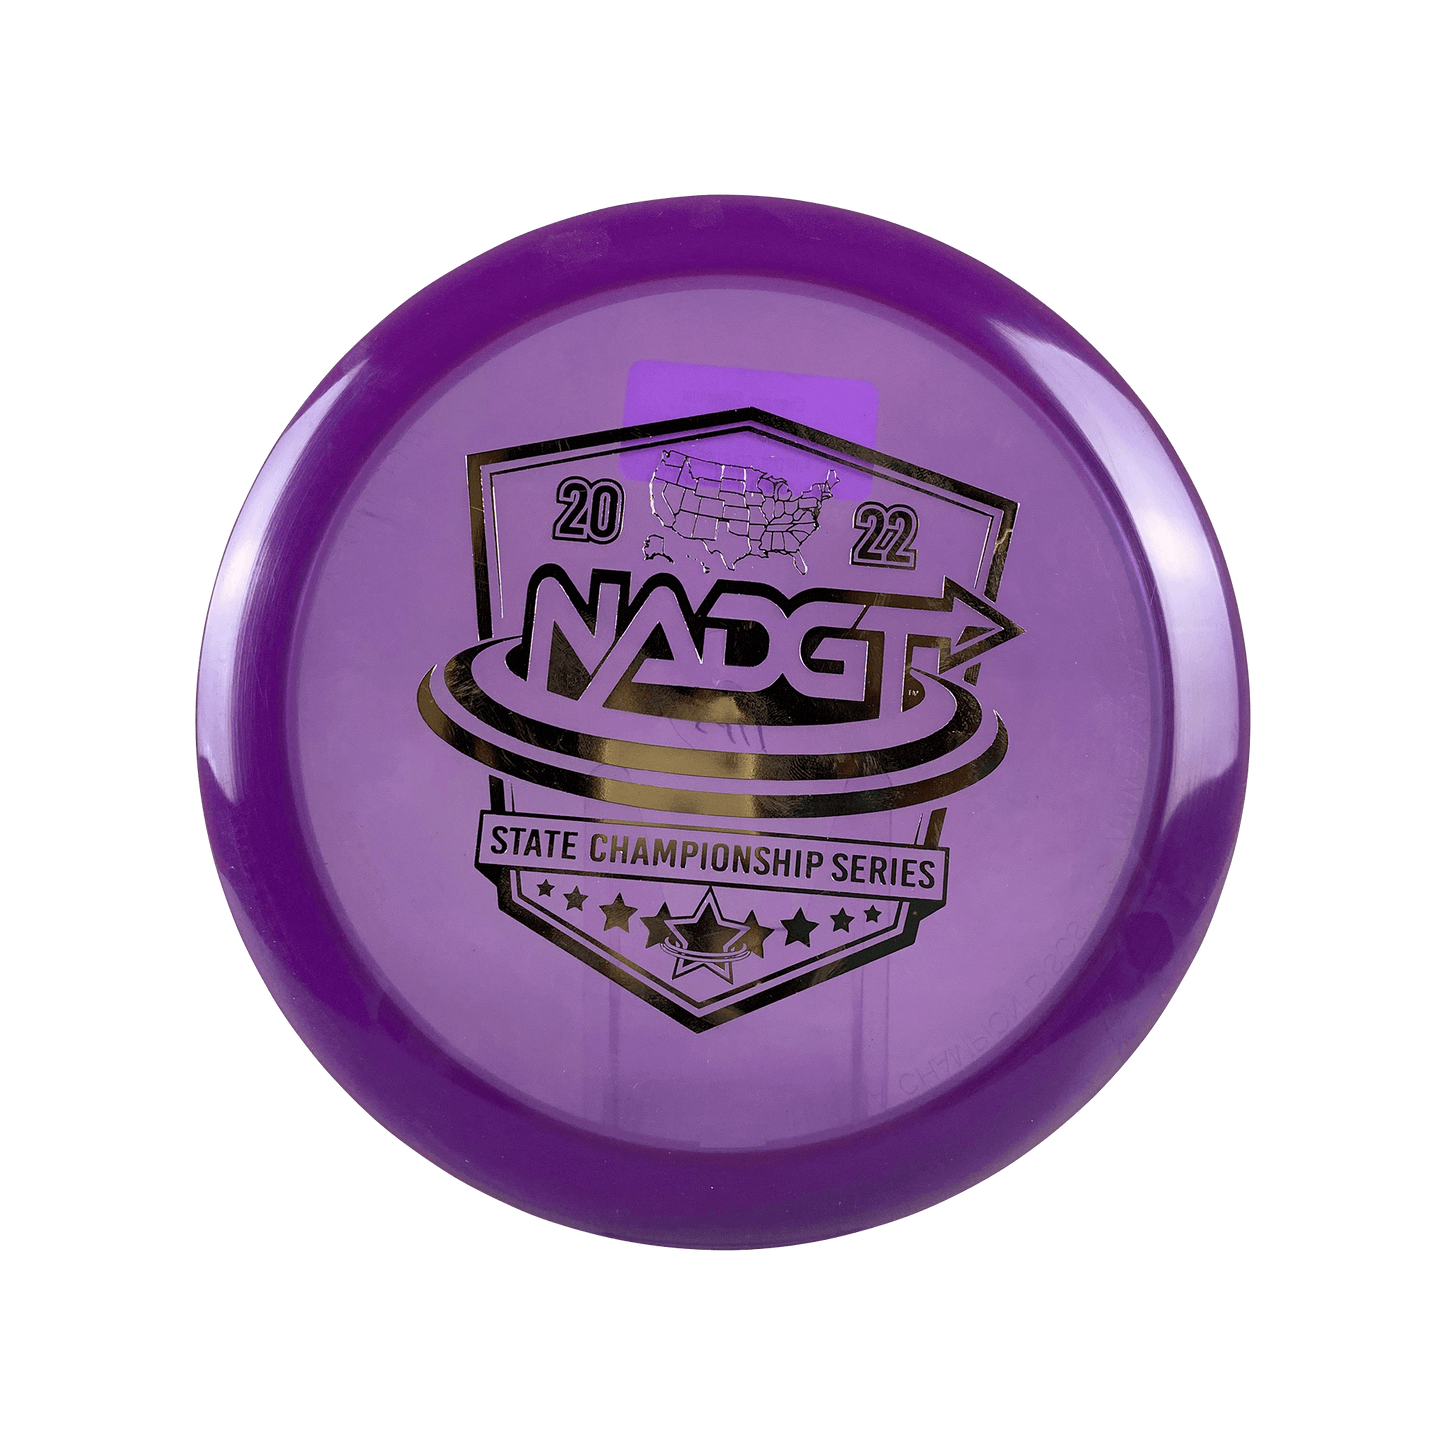 Champion Sidewinder - NADGT Tour Series 2022 Disc Innova purple 173 